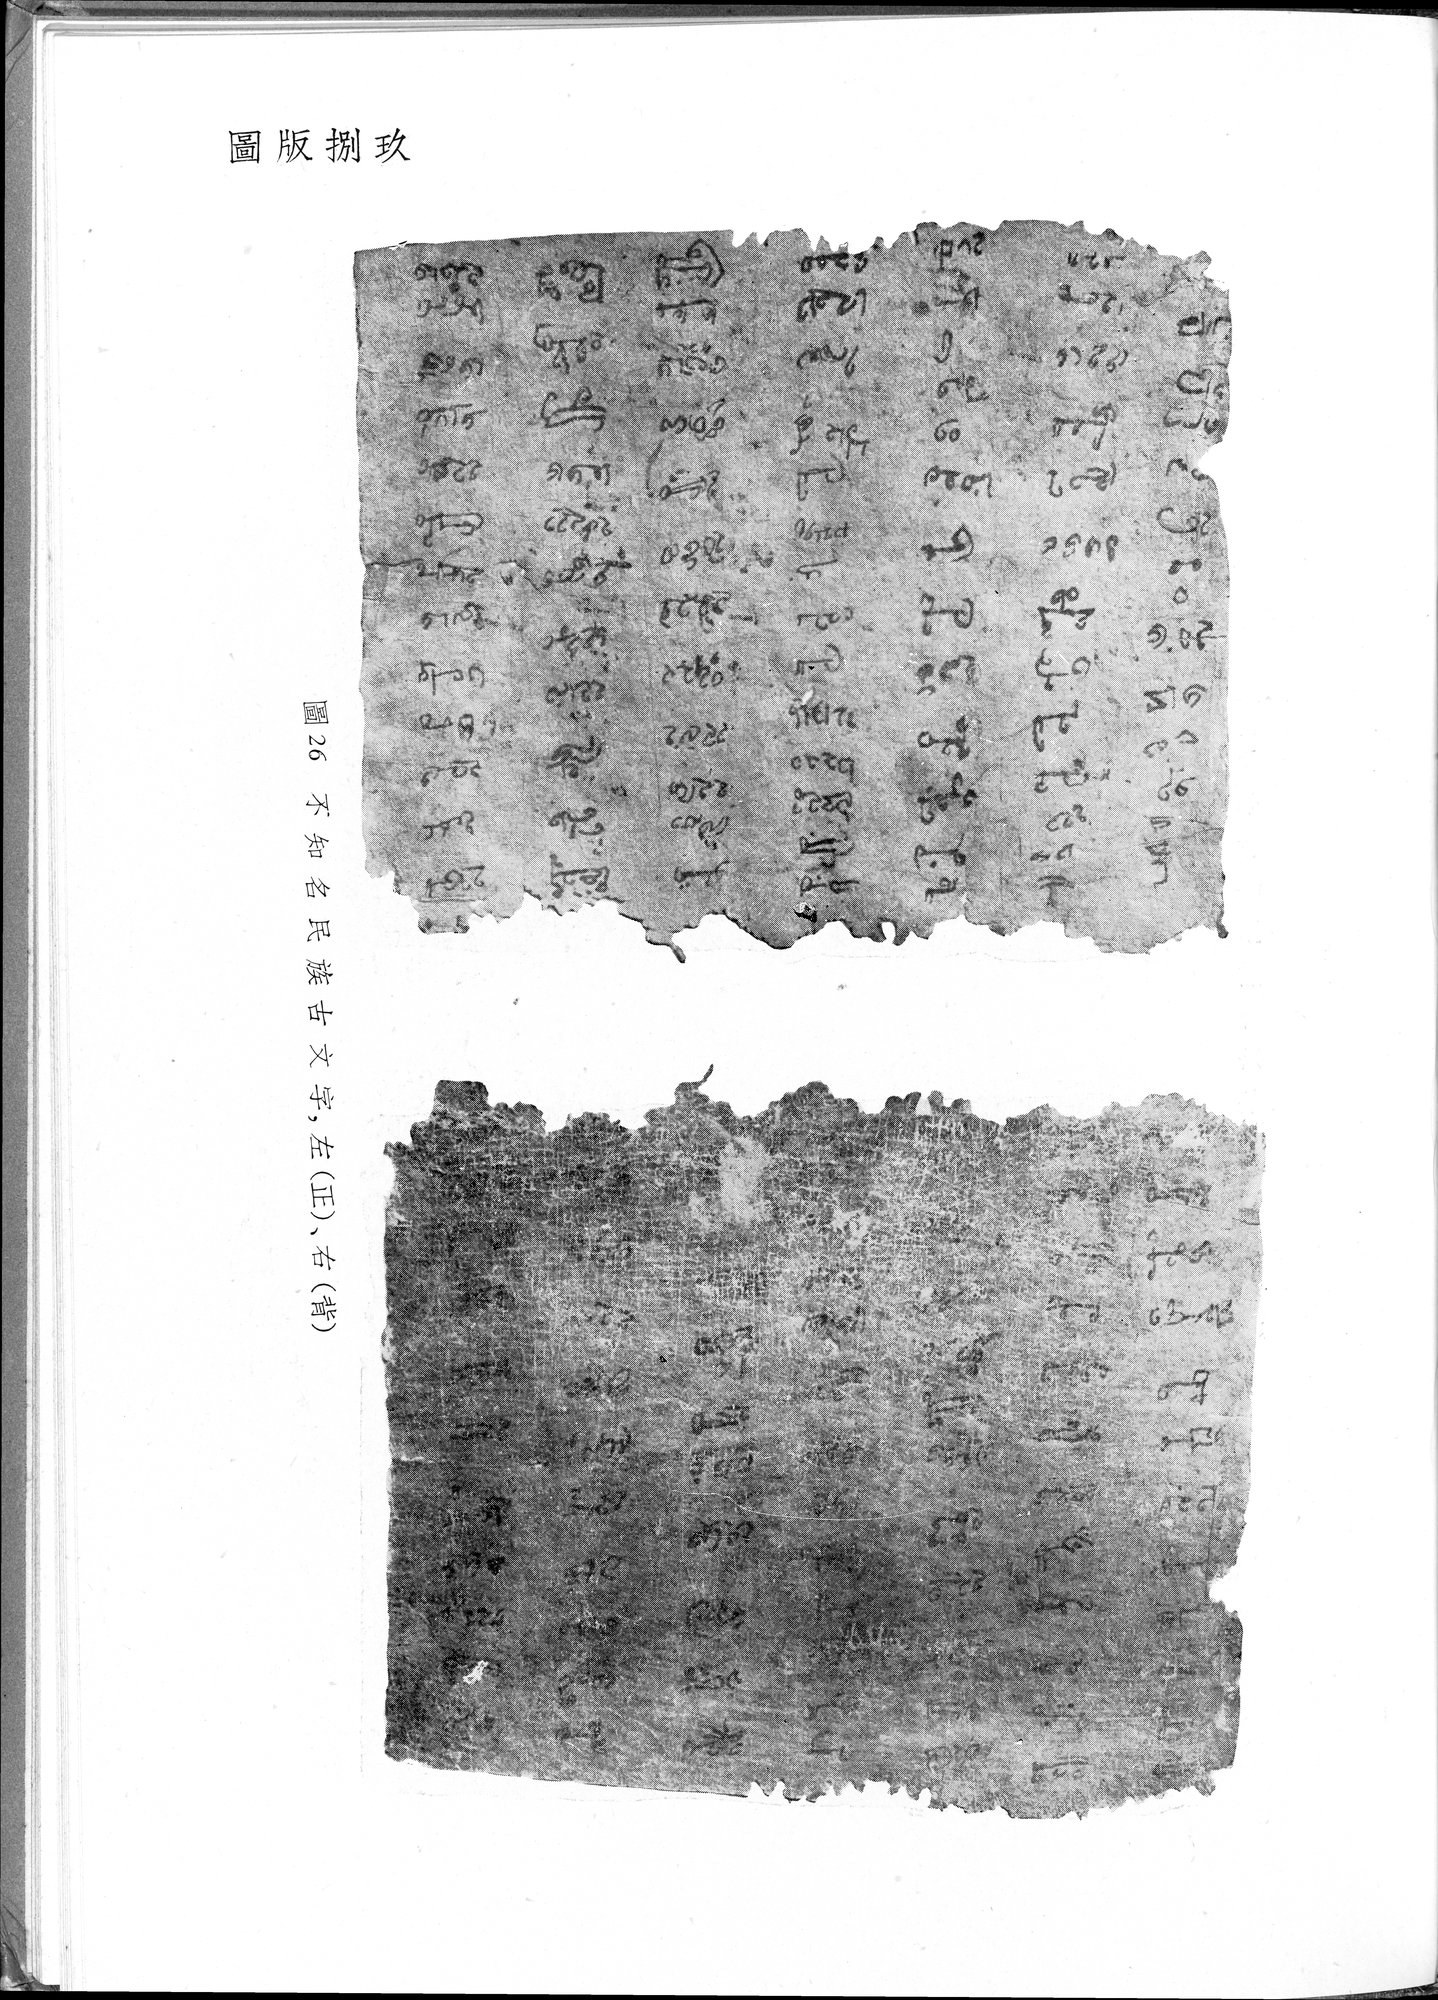 塔里木盆地考古記 : vol.1 / Page 323 (Grayscale High Resolution Image)